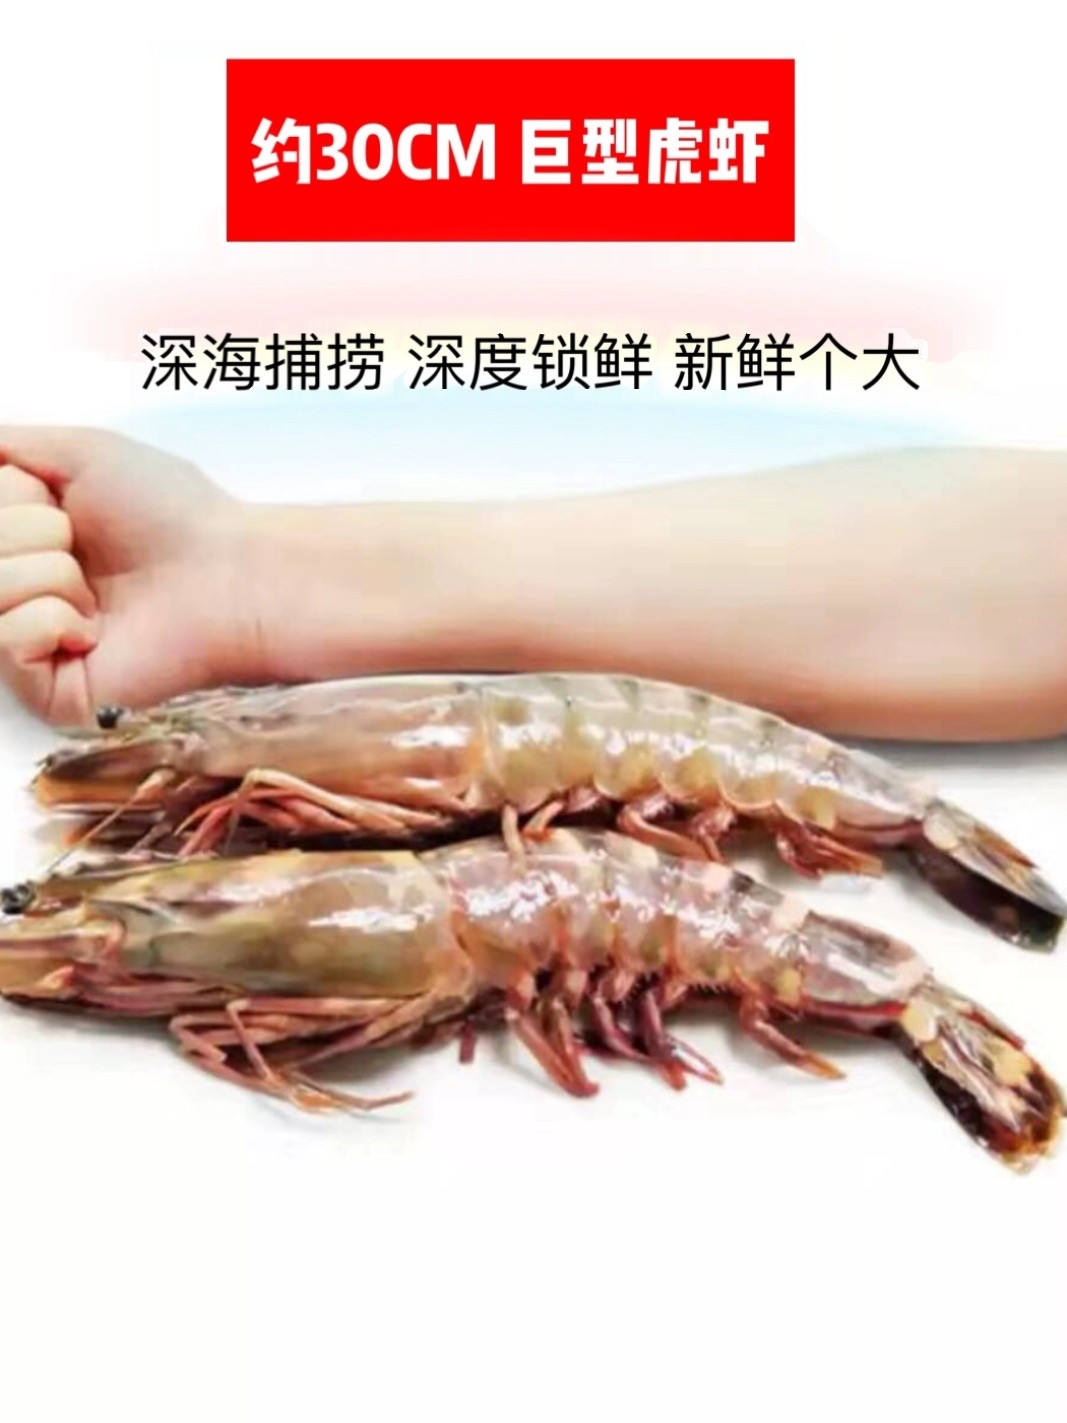 特大黑虎虾活冻新鲜水产海捕深海大虾巨型老虎虾4只/盒礼品虎虾